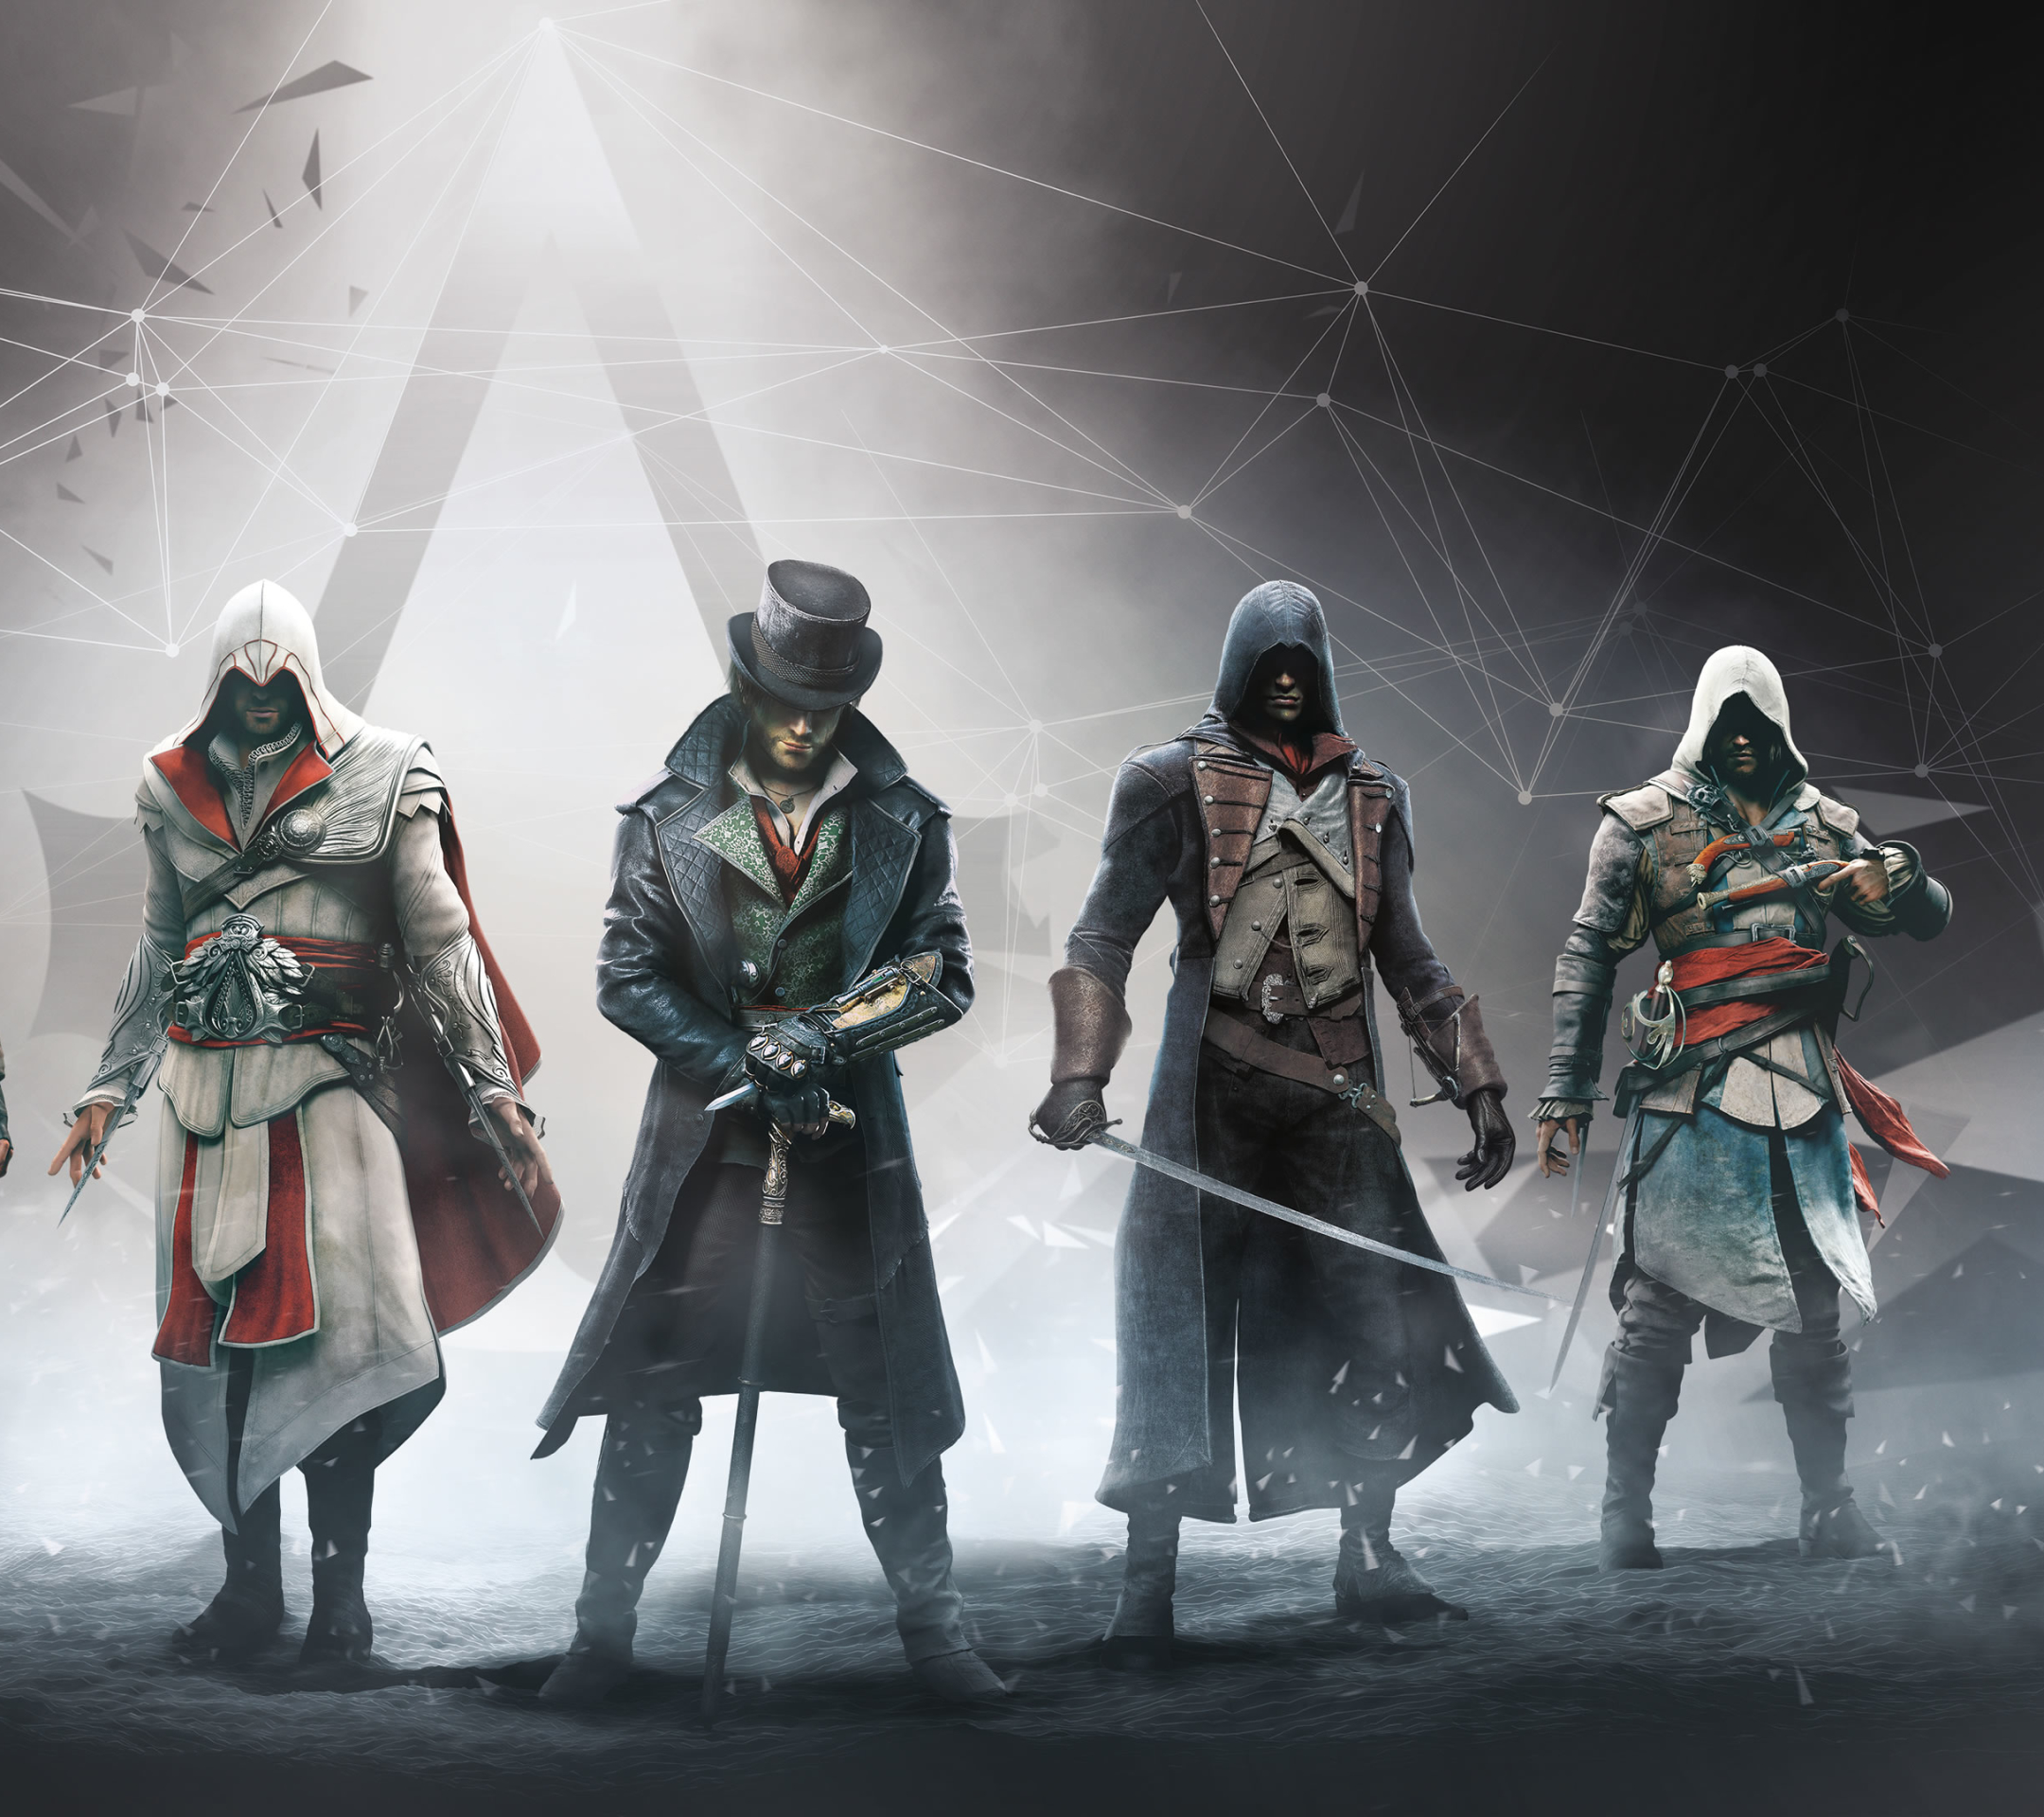 Descarga gratuita de fondo de pantalla para móvil de Videojuego, Altair (Assassin's Creed), Assassin's Creed, Ezio (Assassin's Creed), Connor (Assassin´s Creed), Edward Kenway, Jacob Frey.